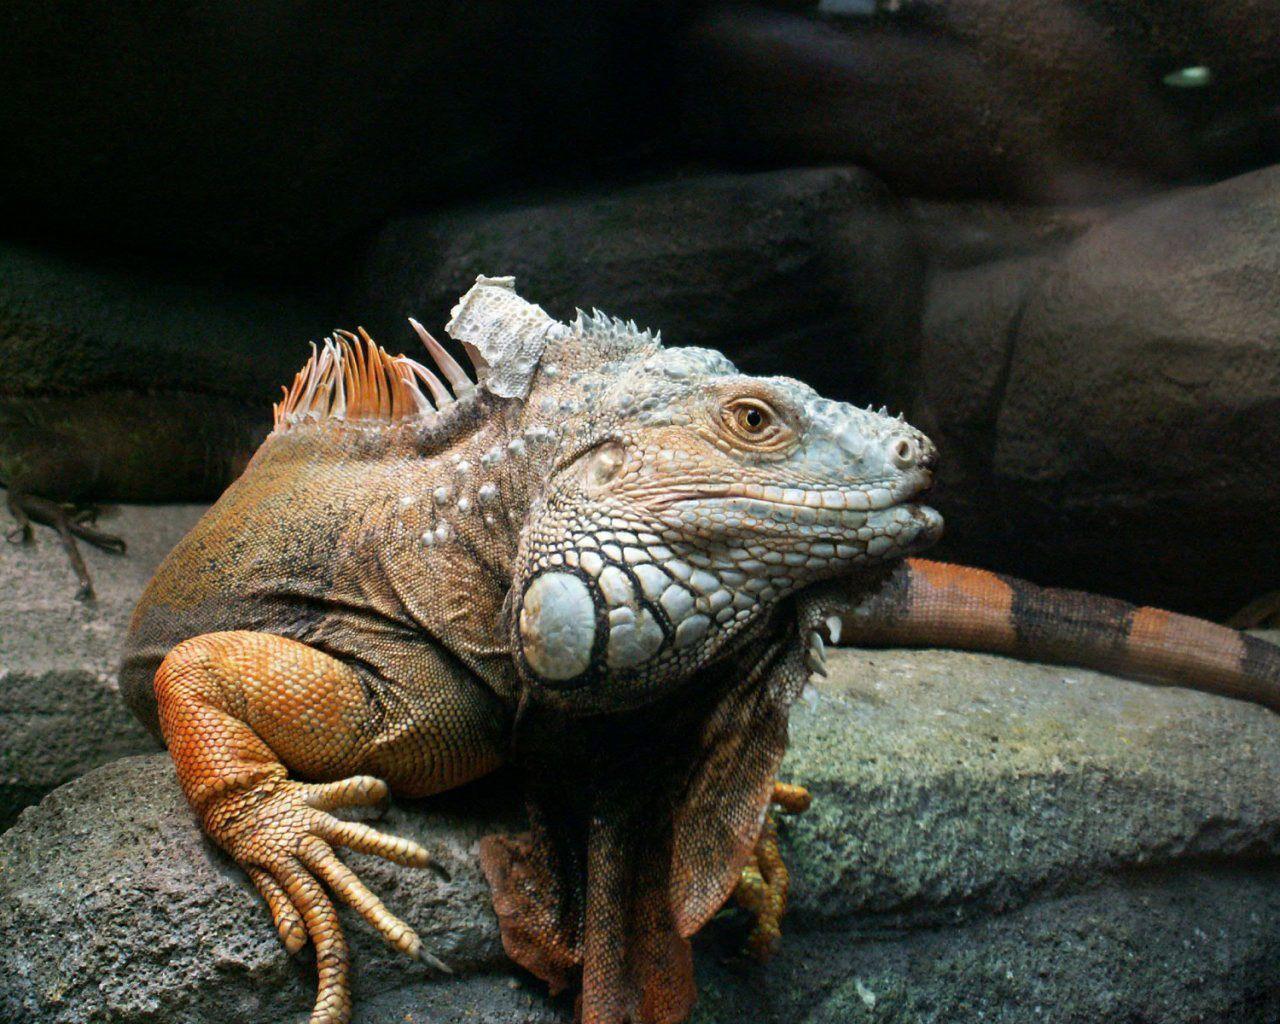 Iguanas image Iguana HD wallpaper and background photo